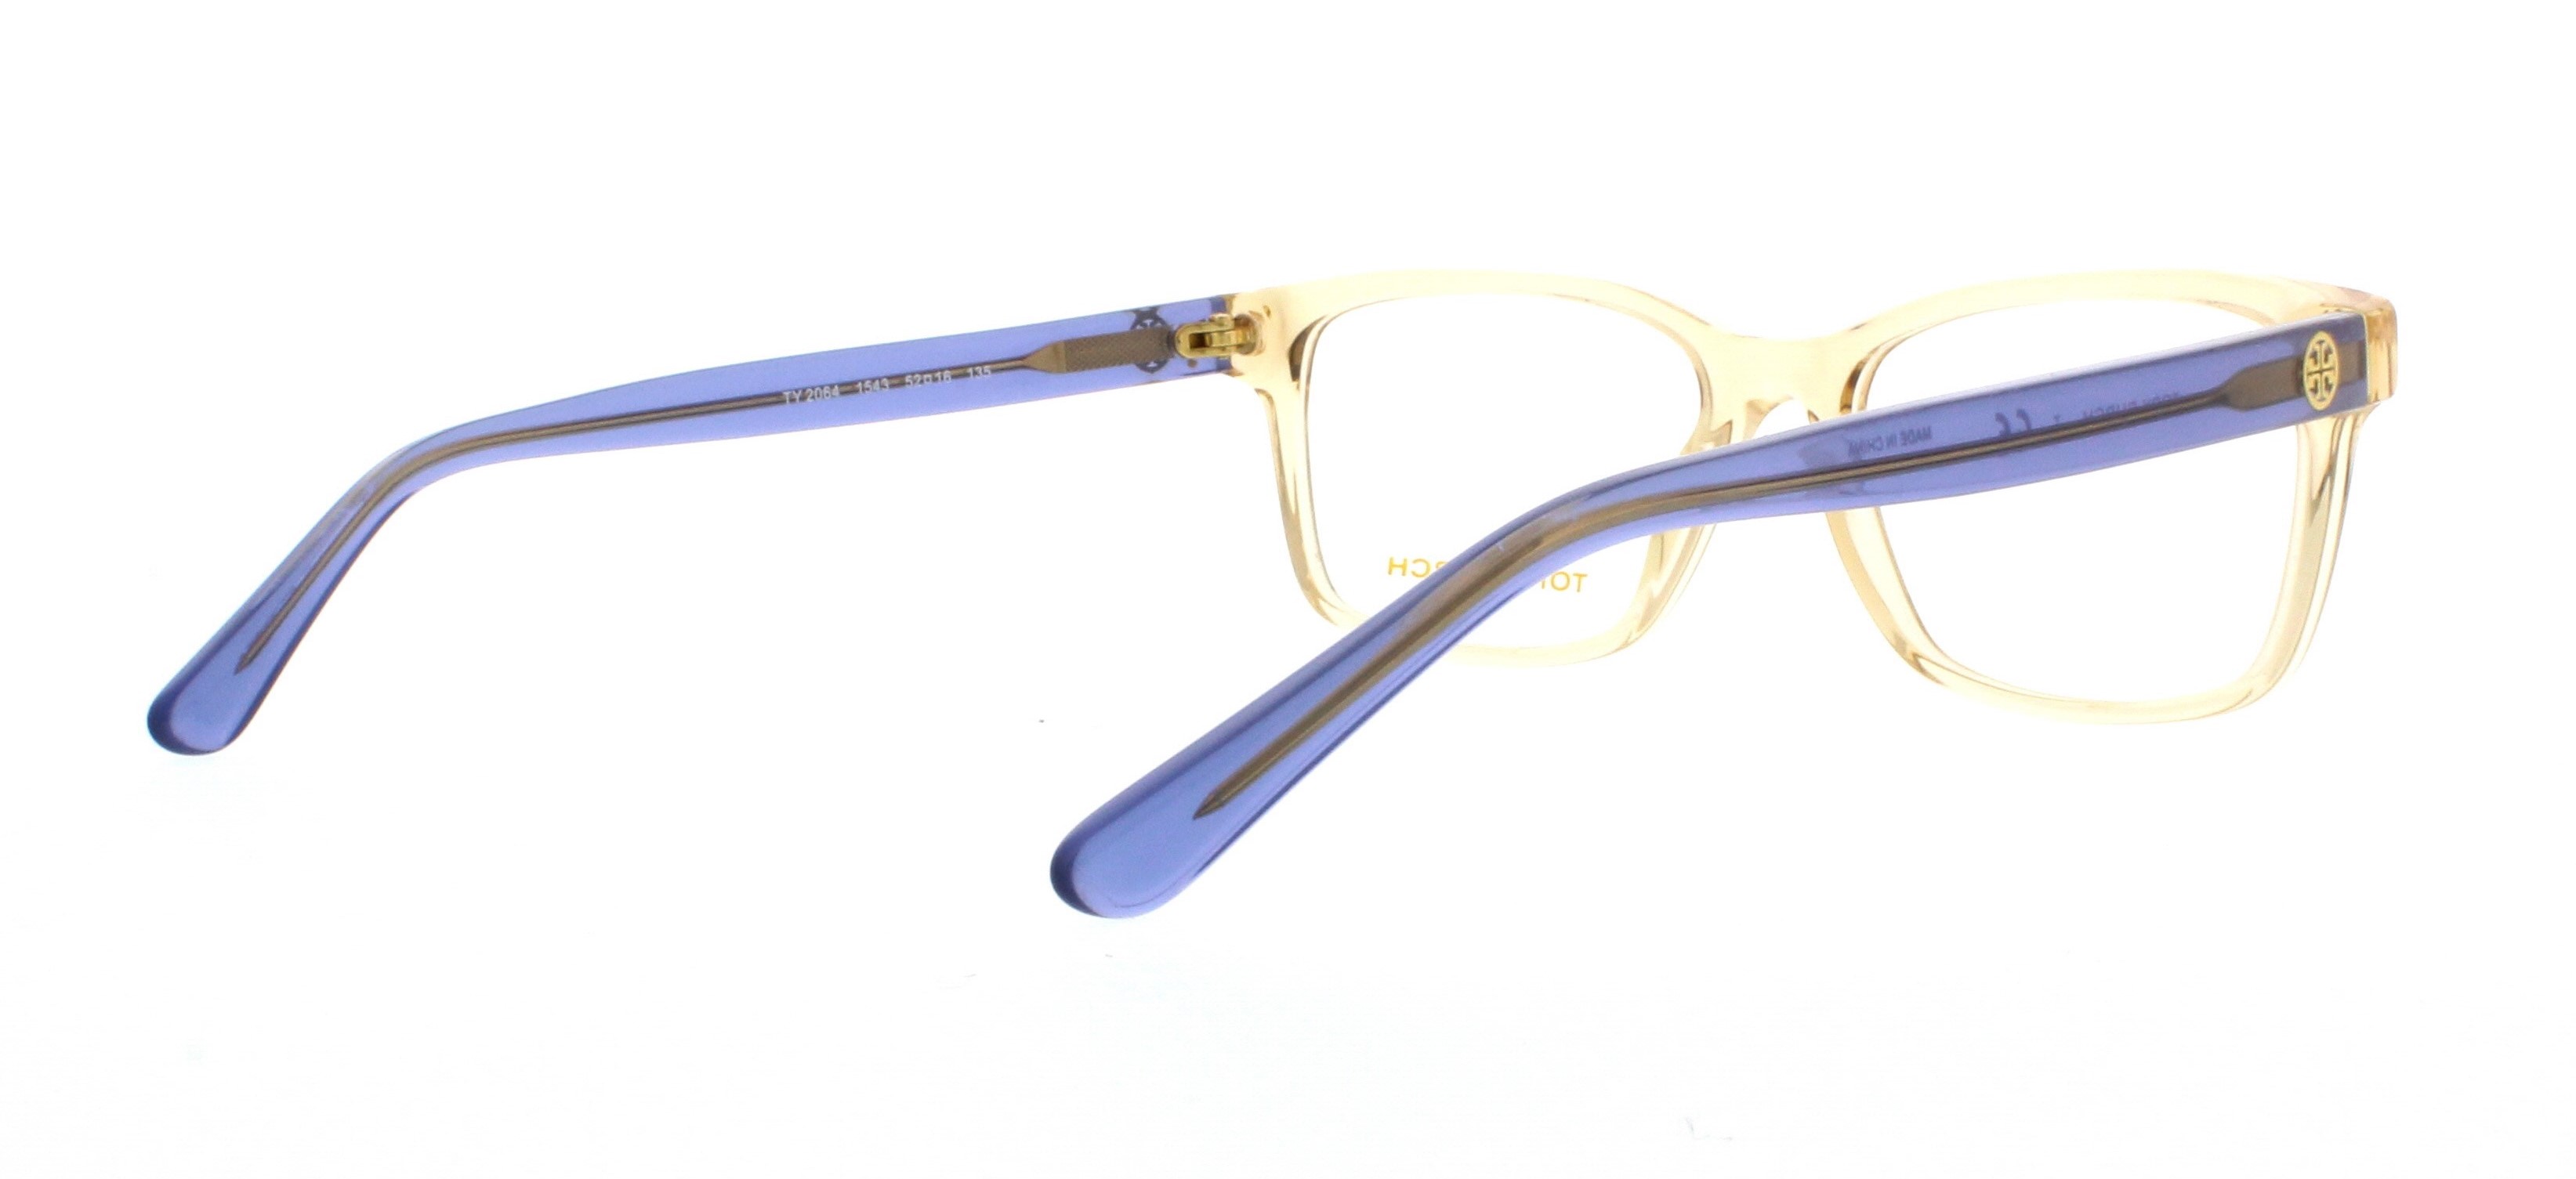 Designer Frames Outlet. Tory Burch Eyeglasses TY2064